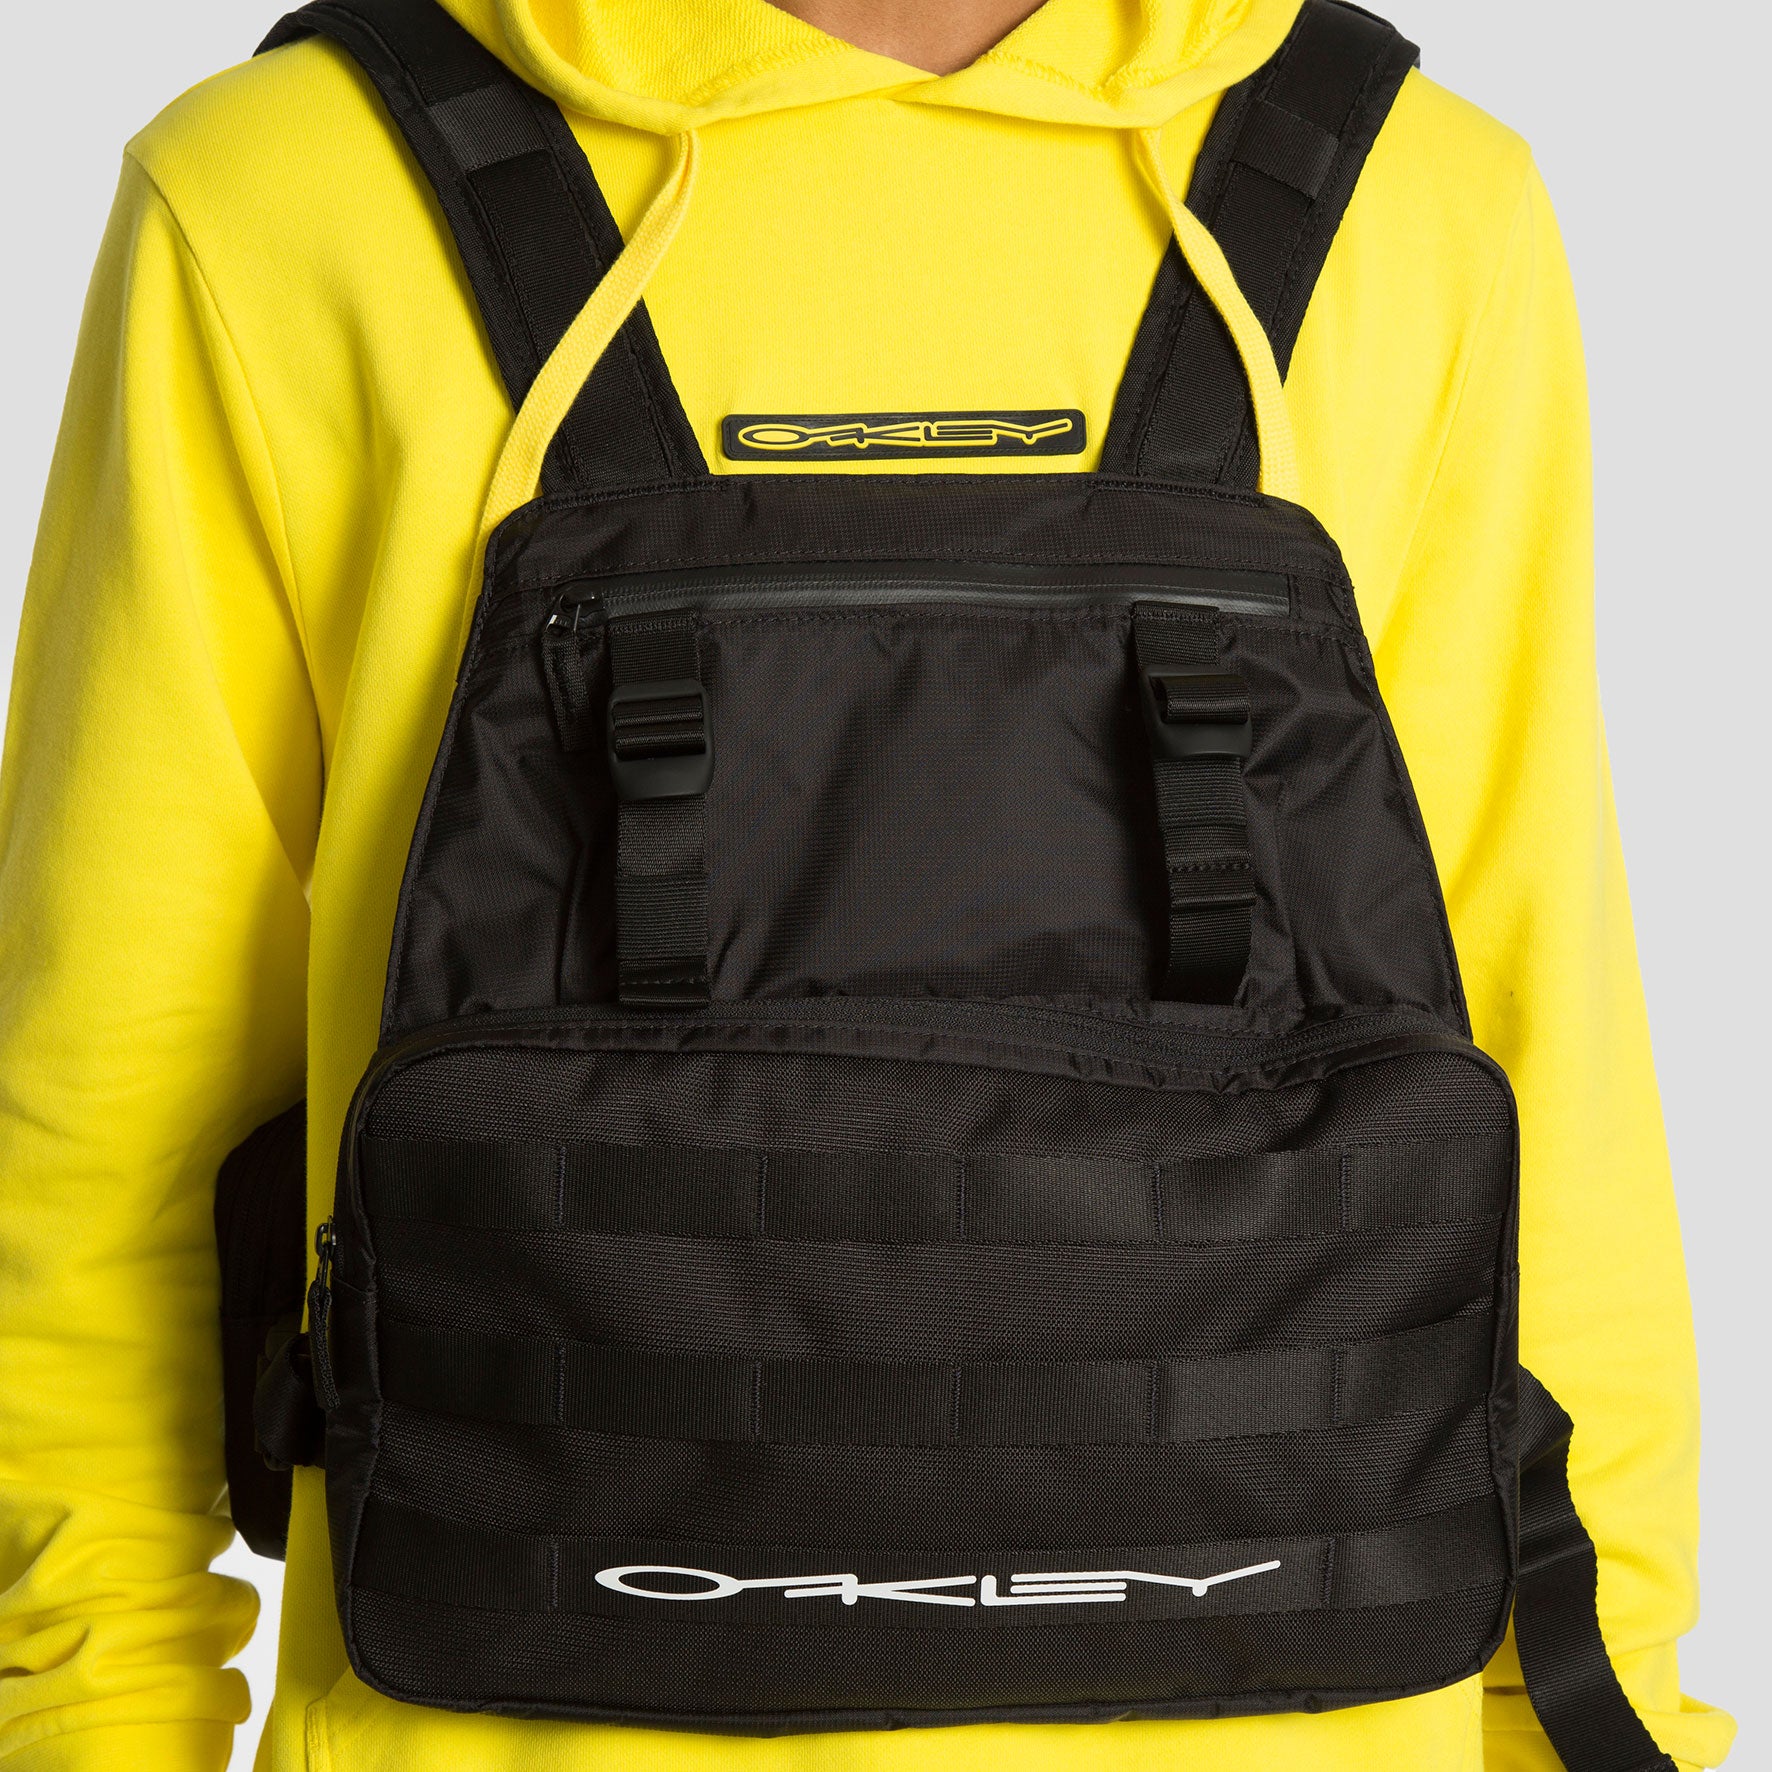 Oakley Riñonera Definition Bodybag Vest - FOS900055 - Colección Unisex